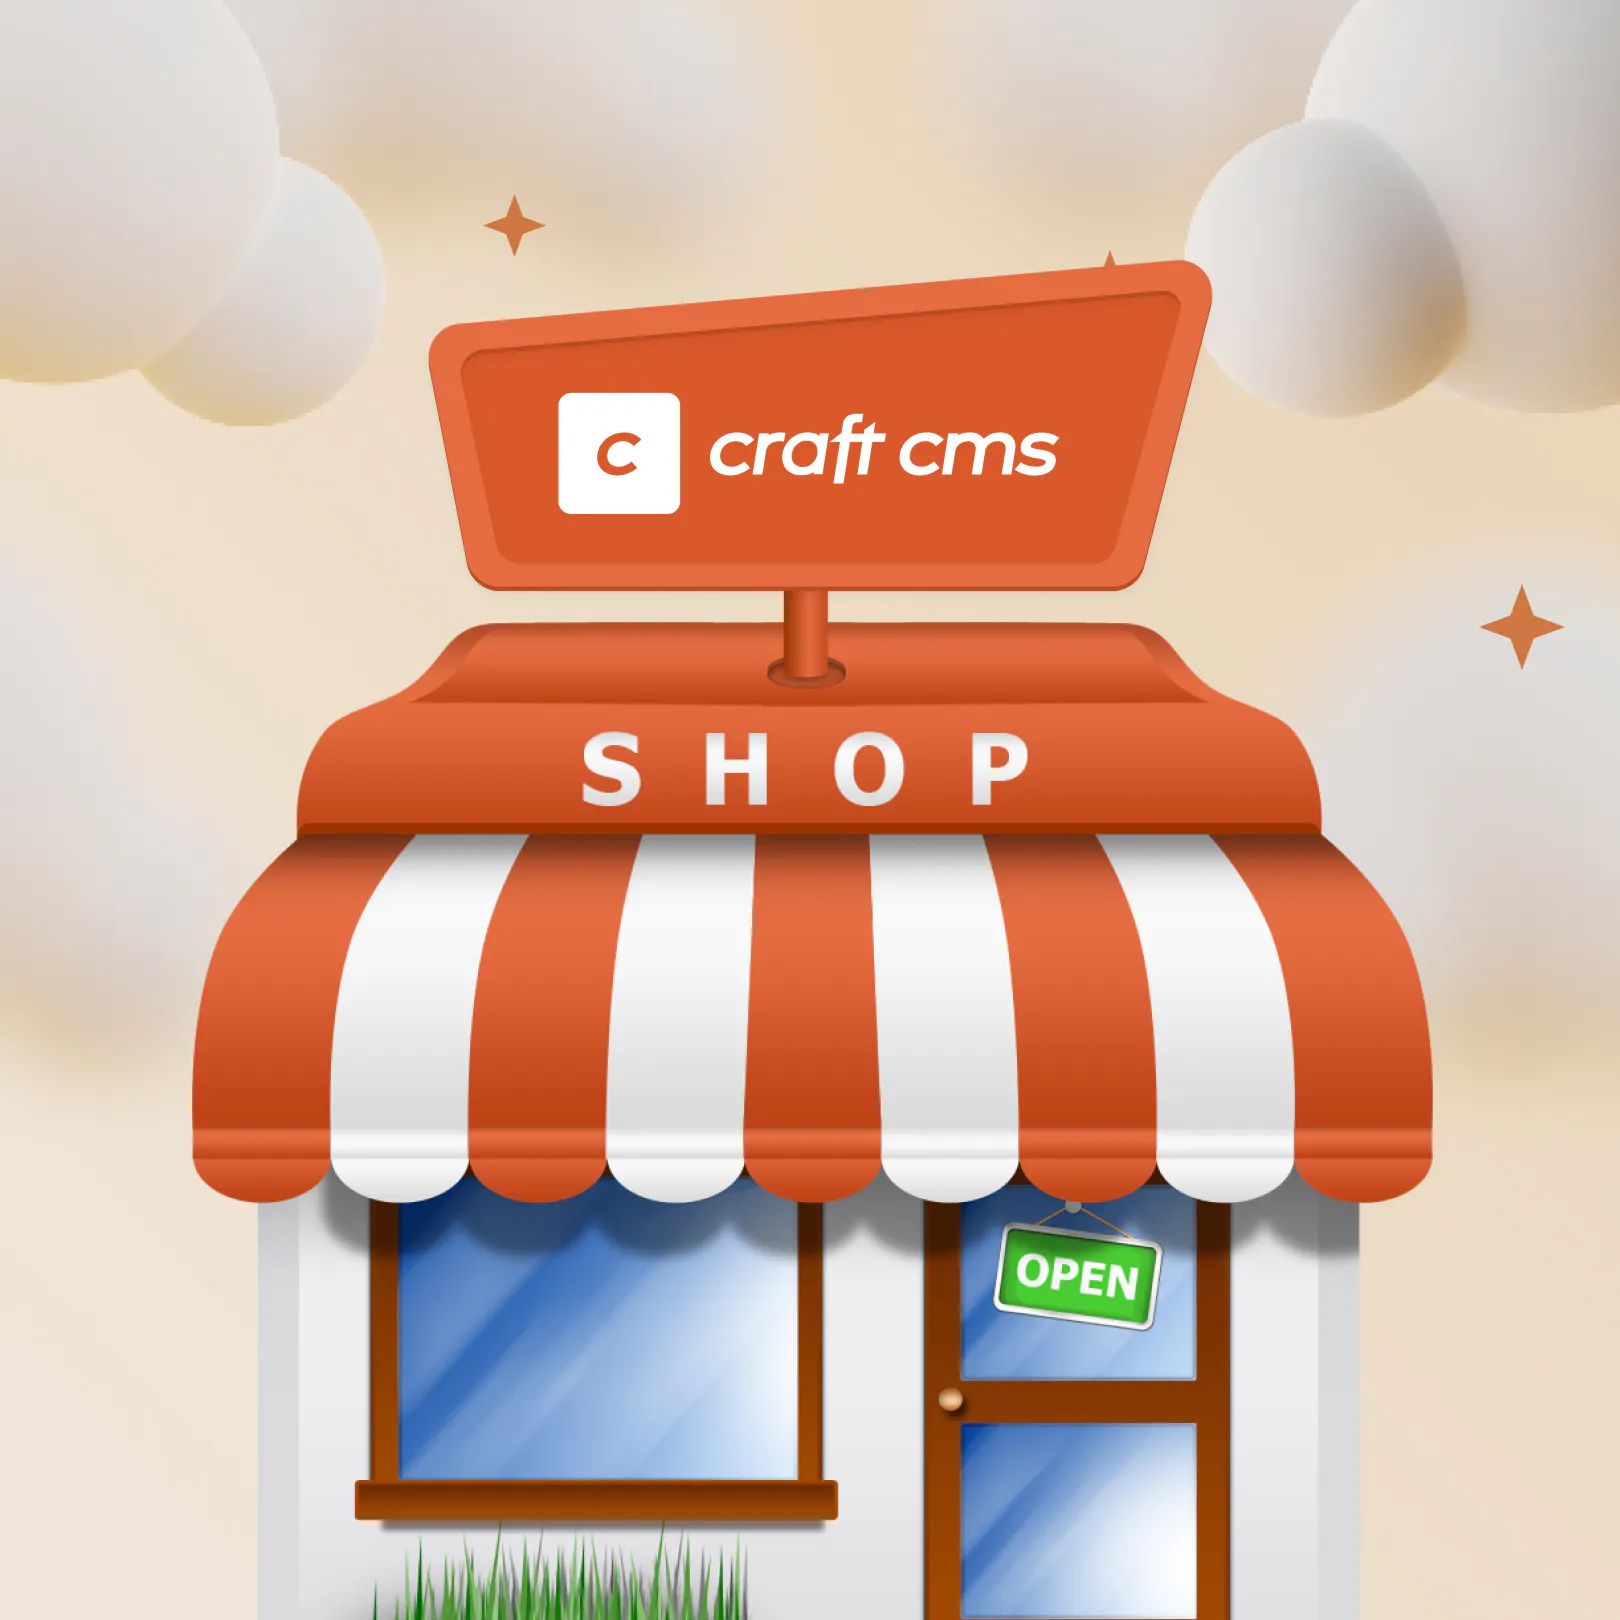 Craft CMS Shop image